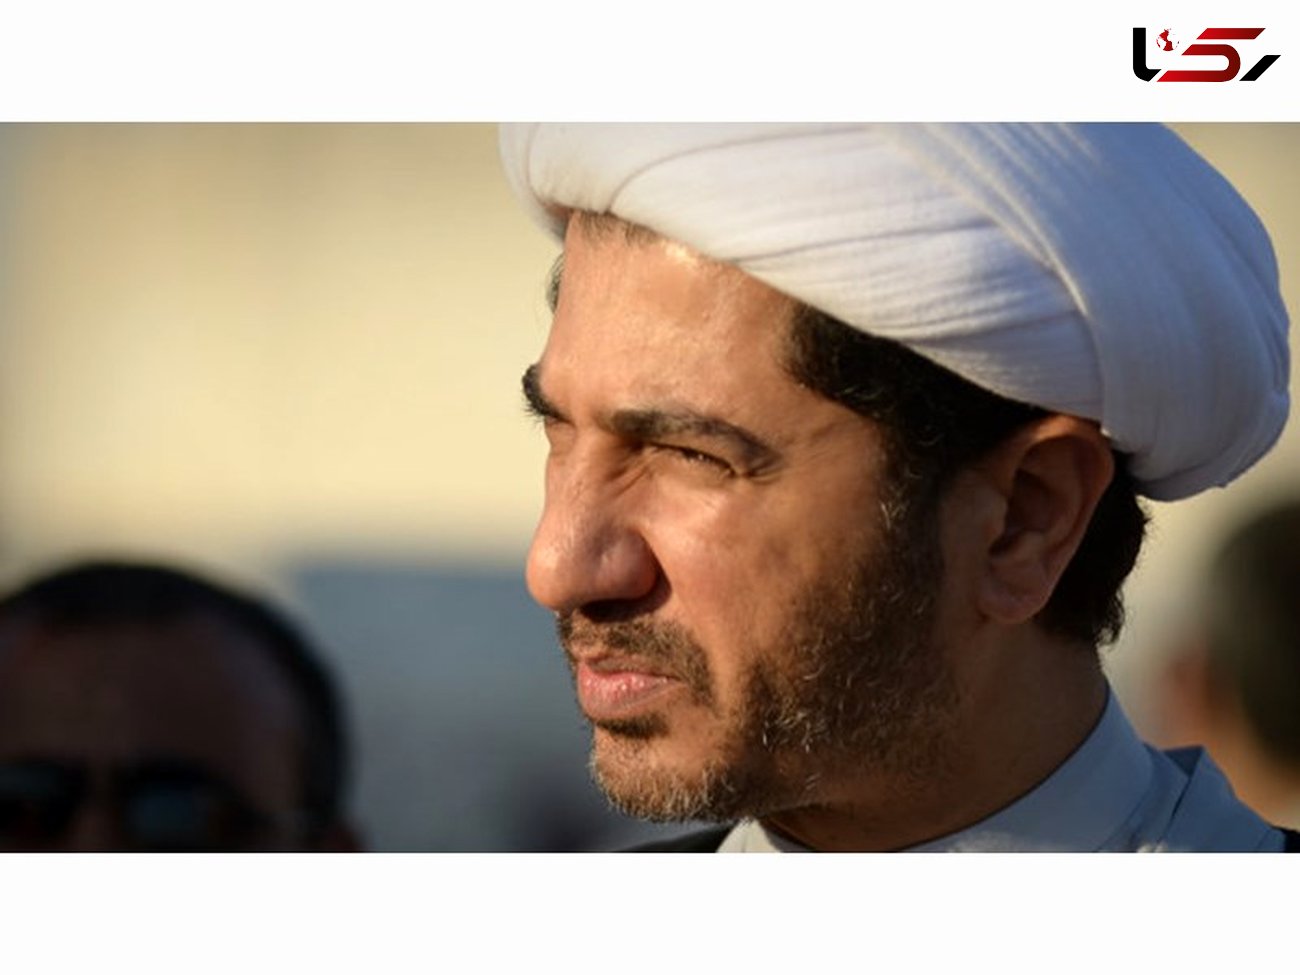 سنگین ترین محکومیت برای شیخ علی سلمان 